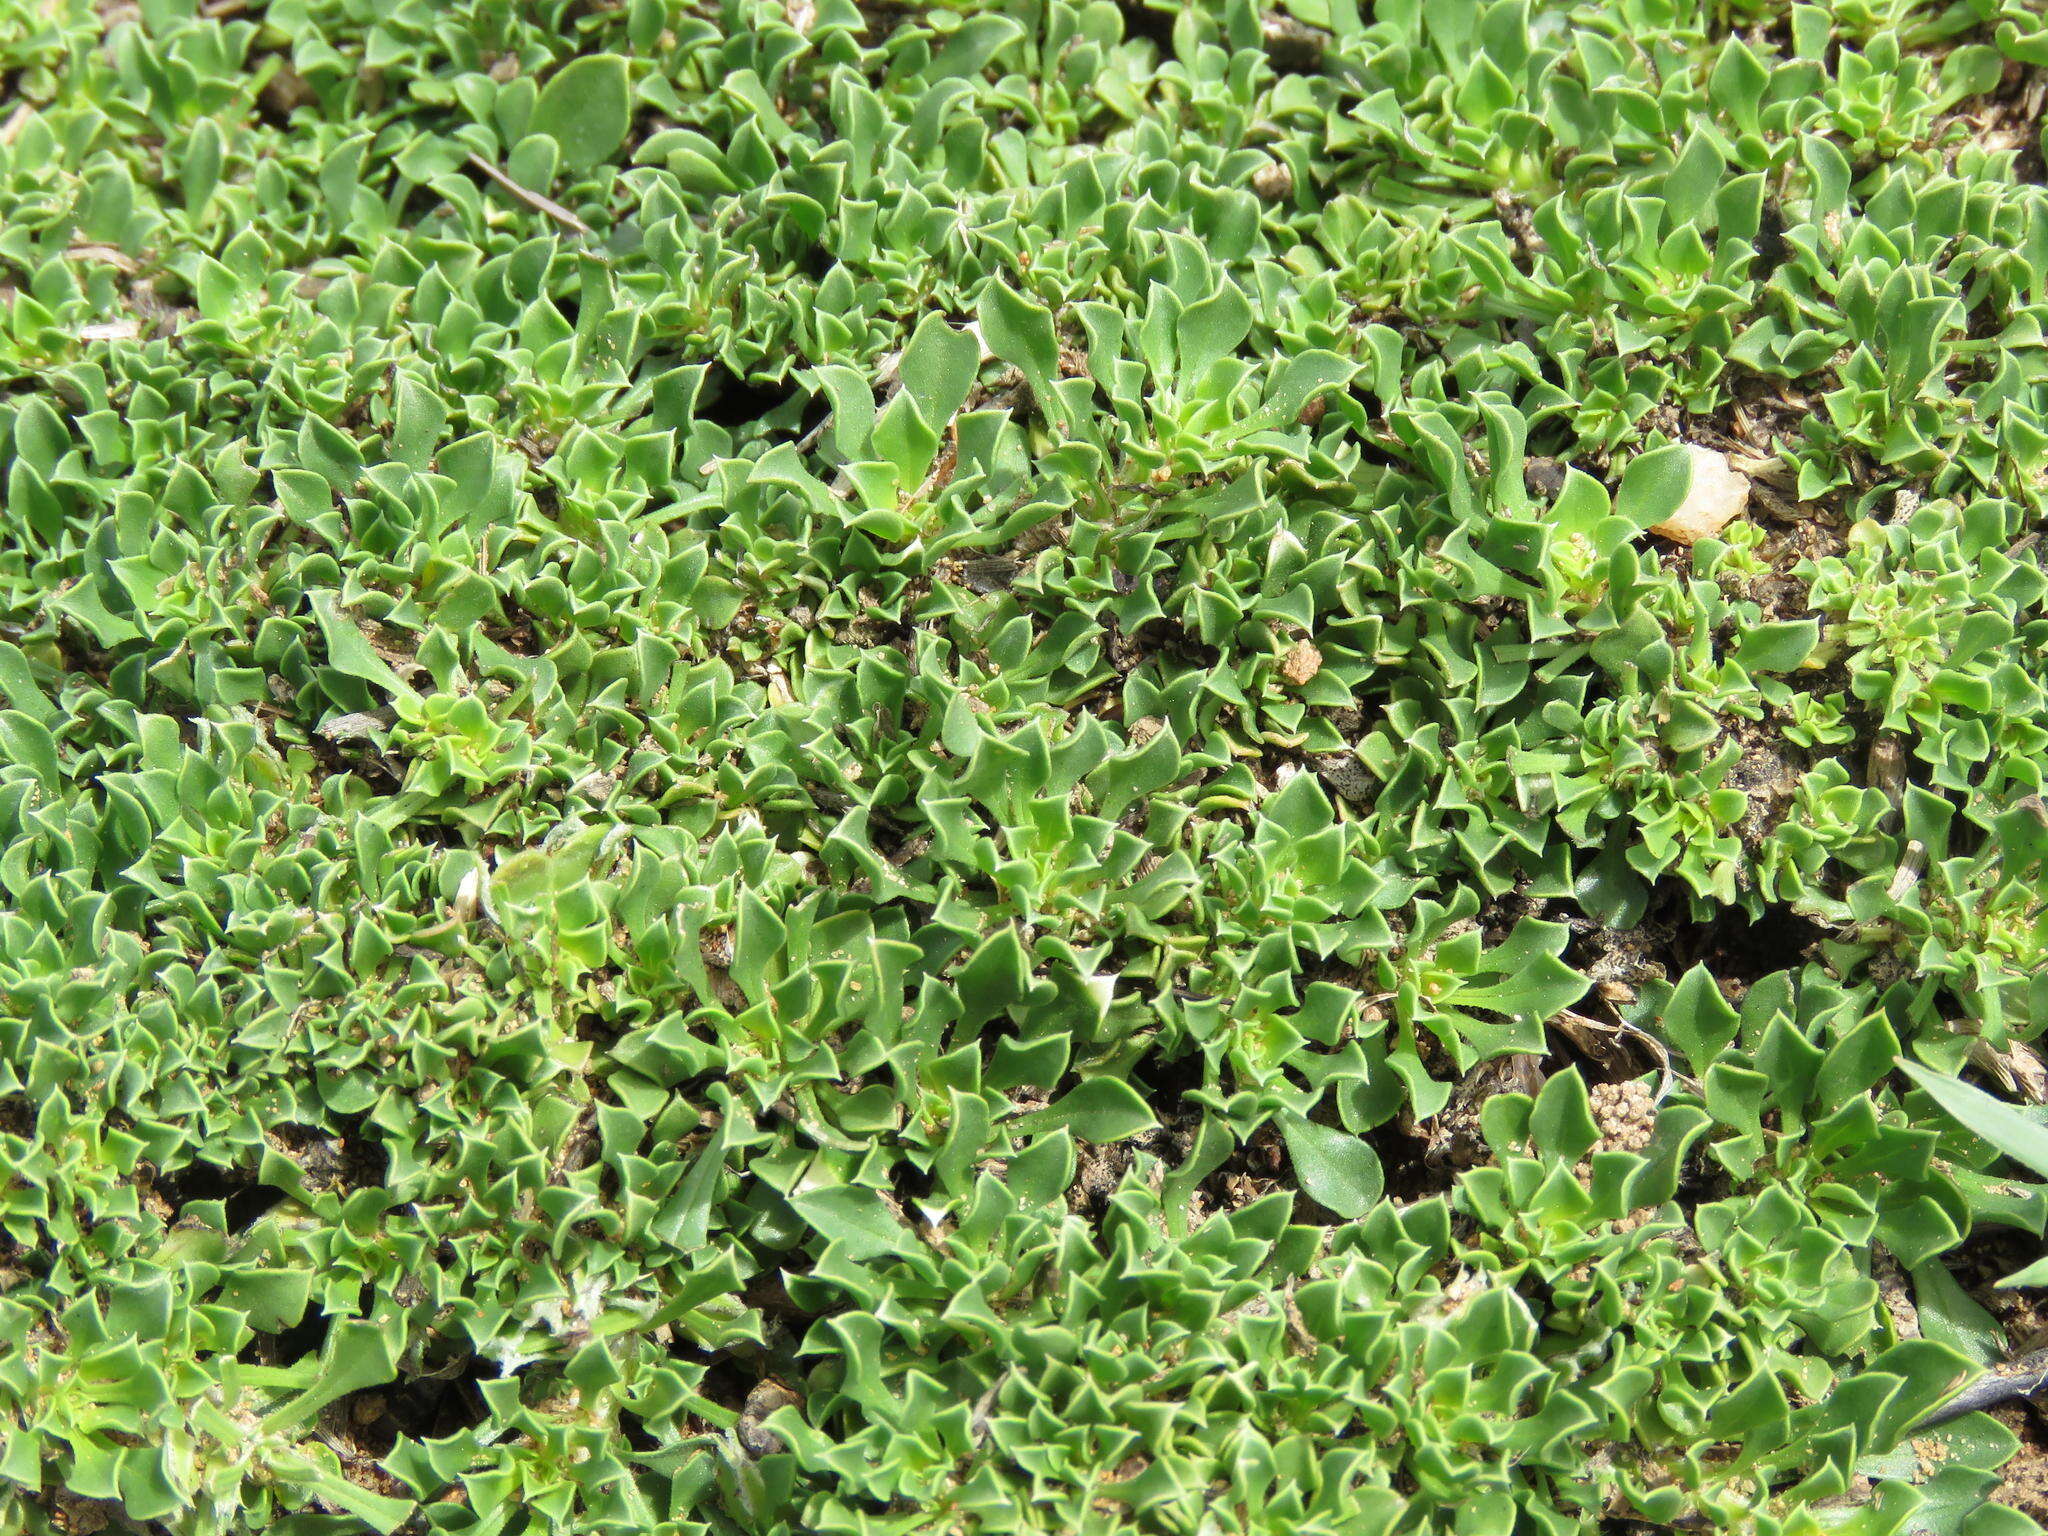 Image of Aptosimum procumbens (Lehm.) Burch. ex Steud.